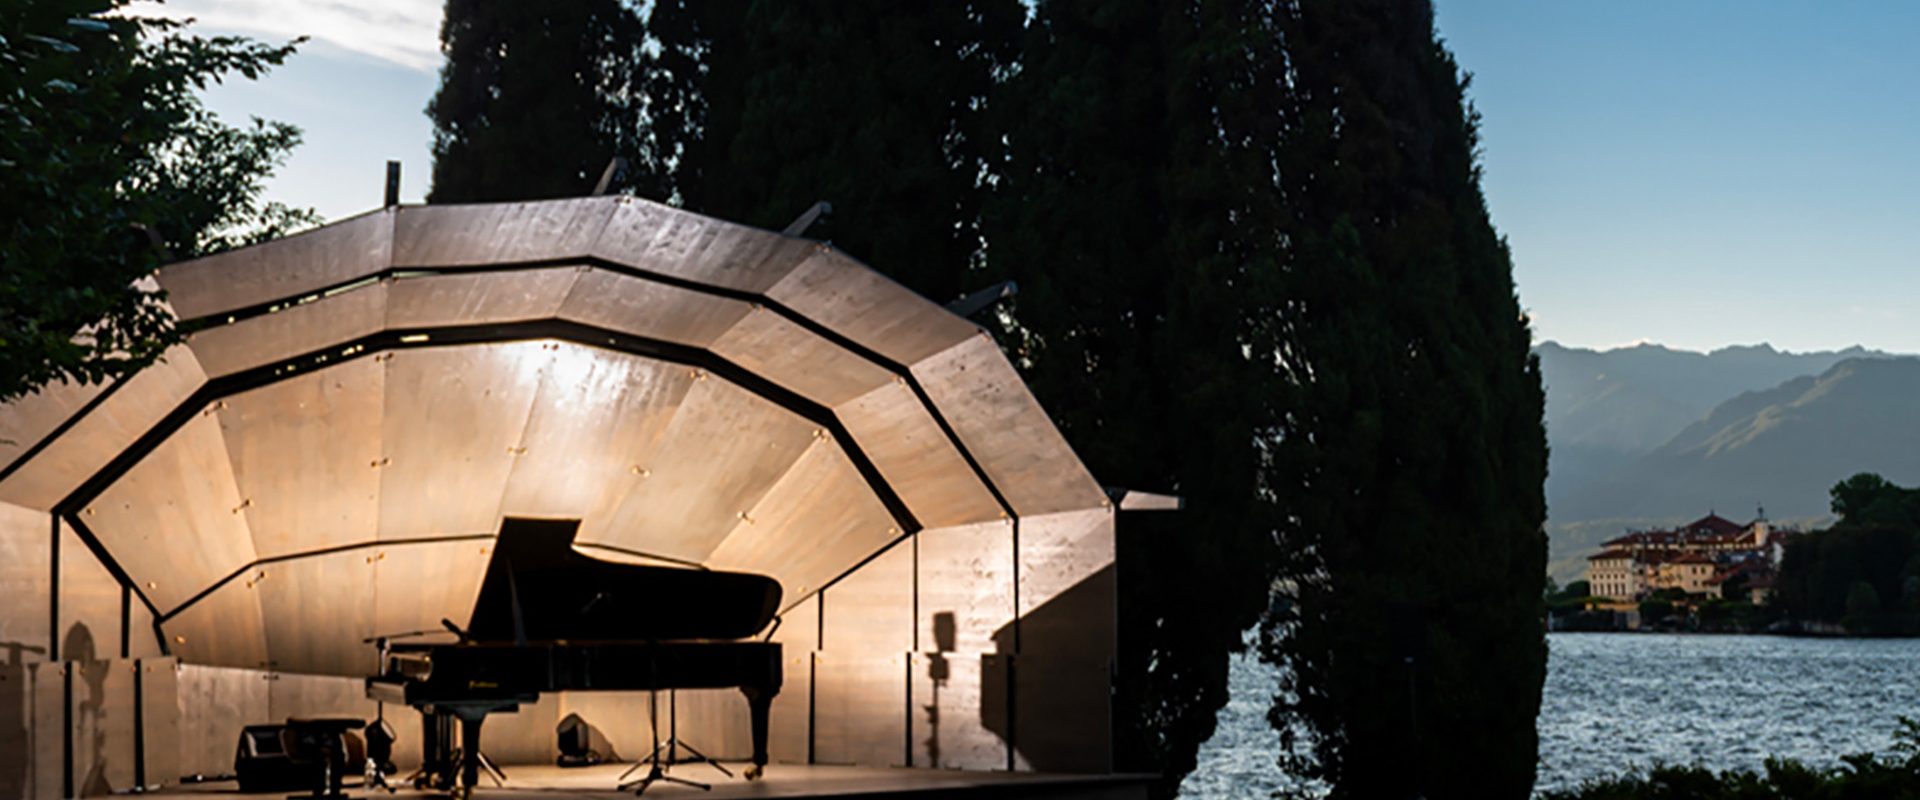 Tornano le isole musicali di Stresa Festival tra jazz, classica e molto altro